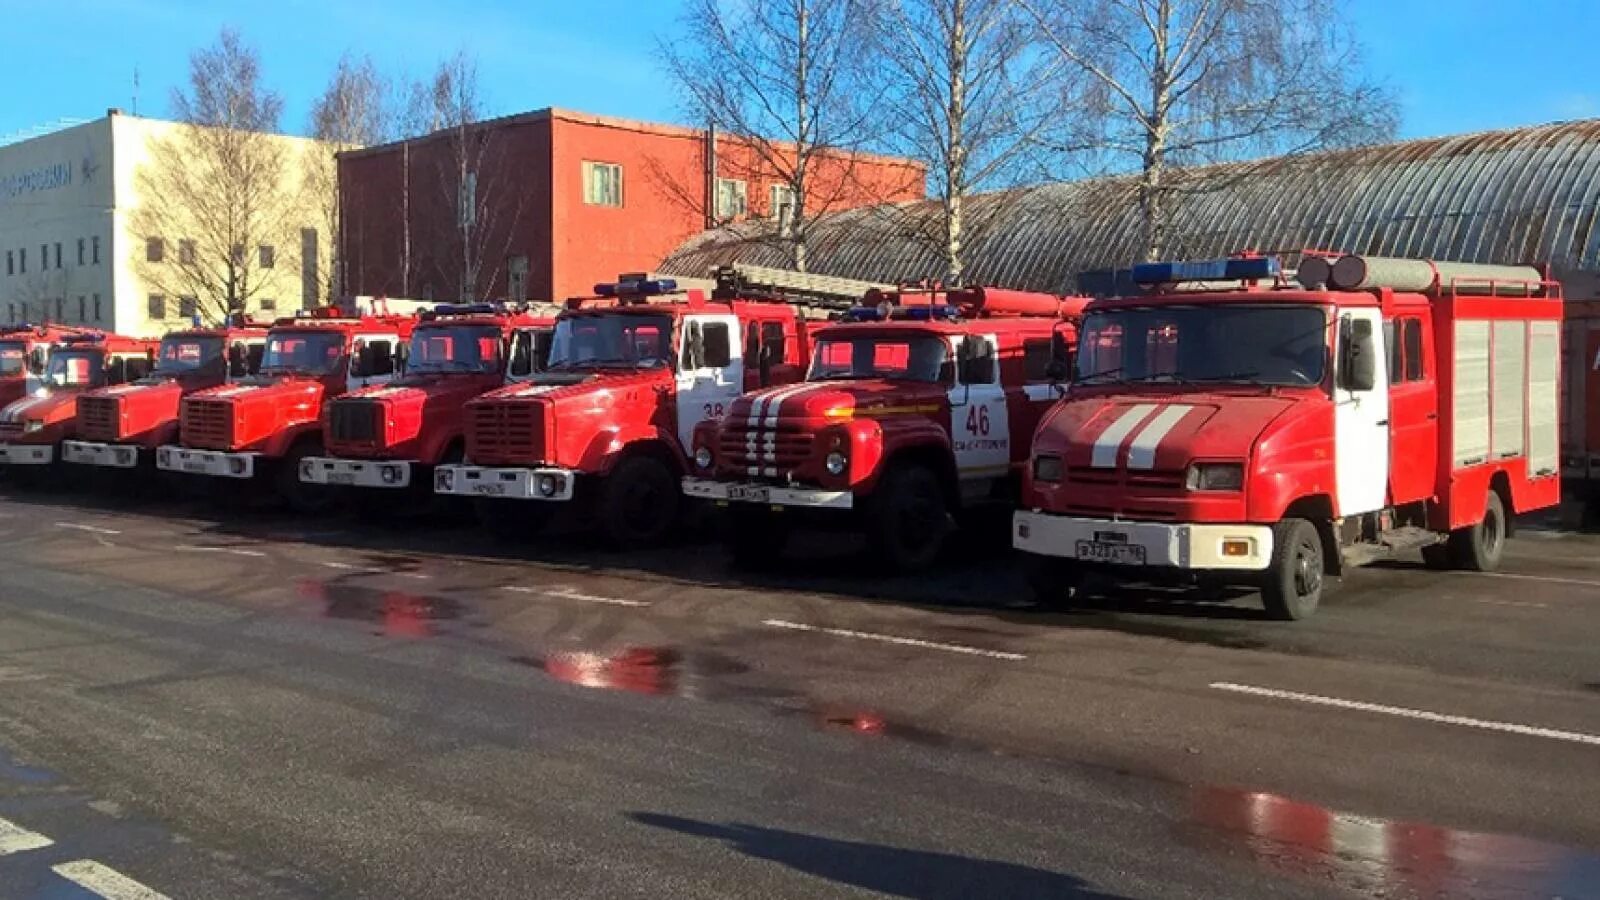 Хранение пожарных автомобилей. Списанные пожарные машины. Пожарная машина Череповец. Пожарные машины в Молдавии. Пожарные машины Курган.